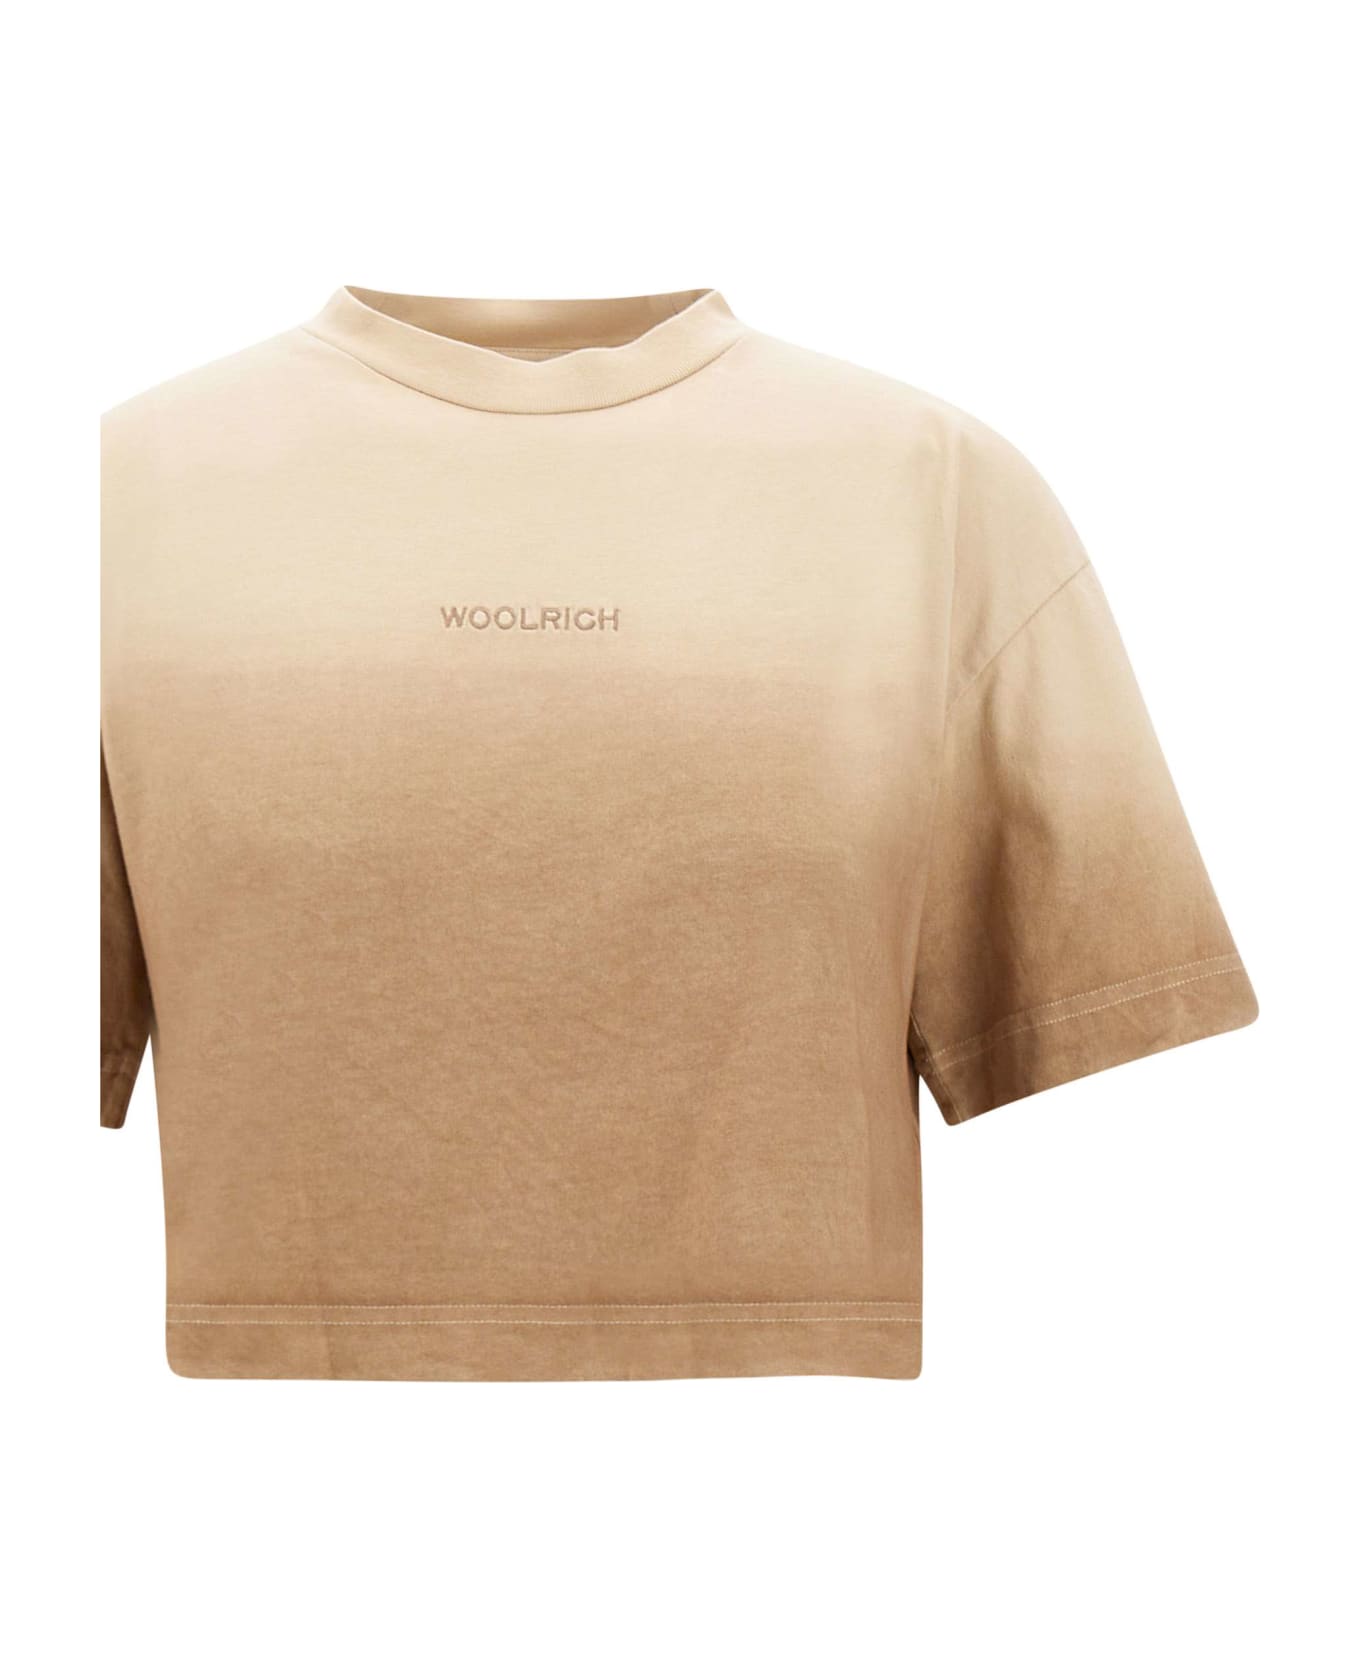 Woolrich "dip Dye" Cotton T-shirt - BEIGE